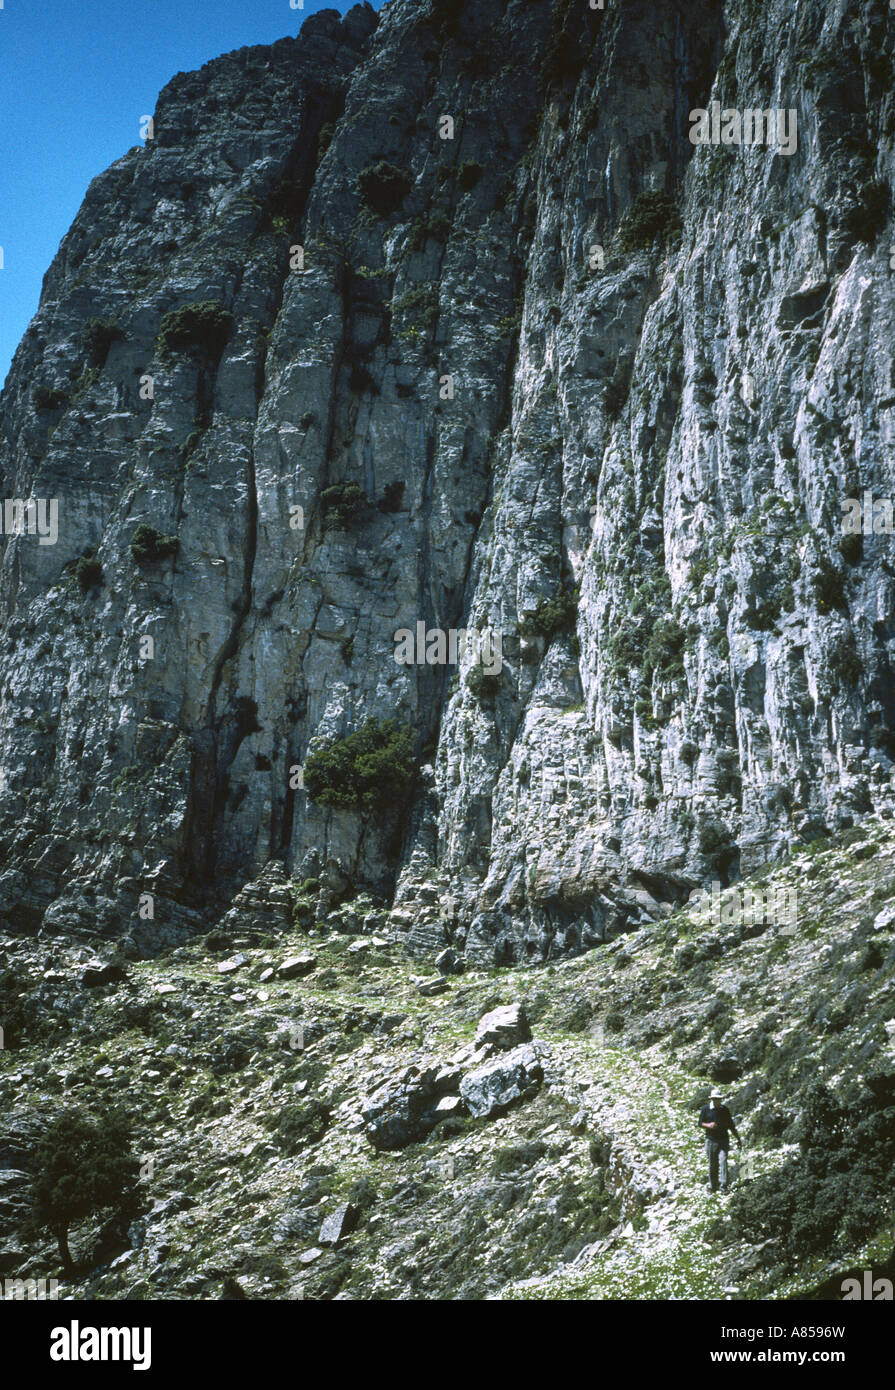 Eine alte Bergpfad oder Monopati auf der Insel Ikaria, Griechenland (gedreht auf Kodachrome 64) Stockfoto